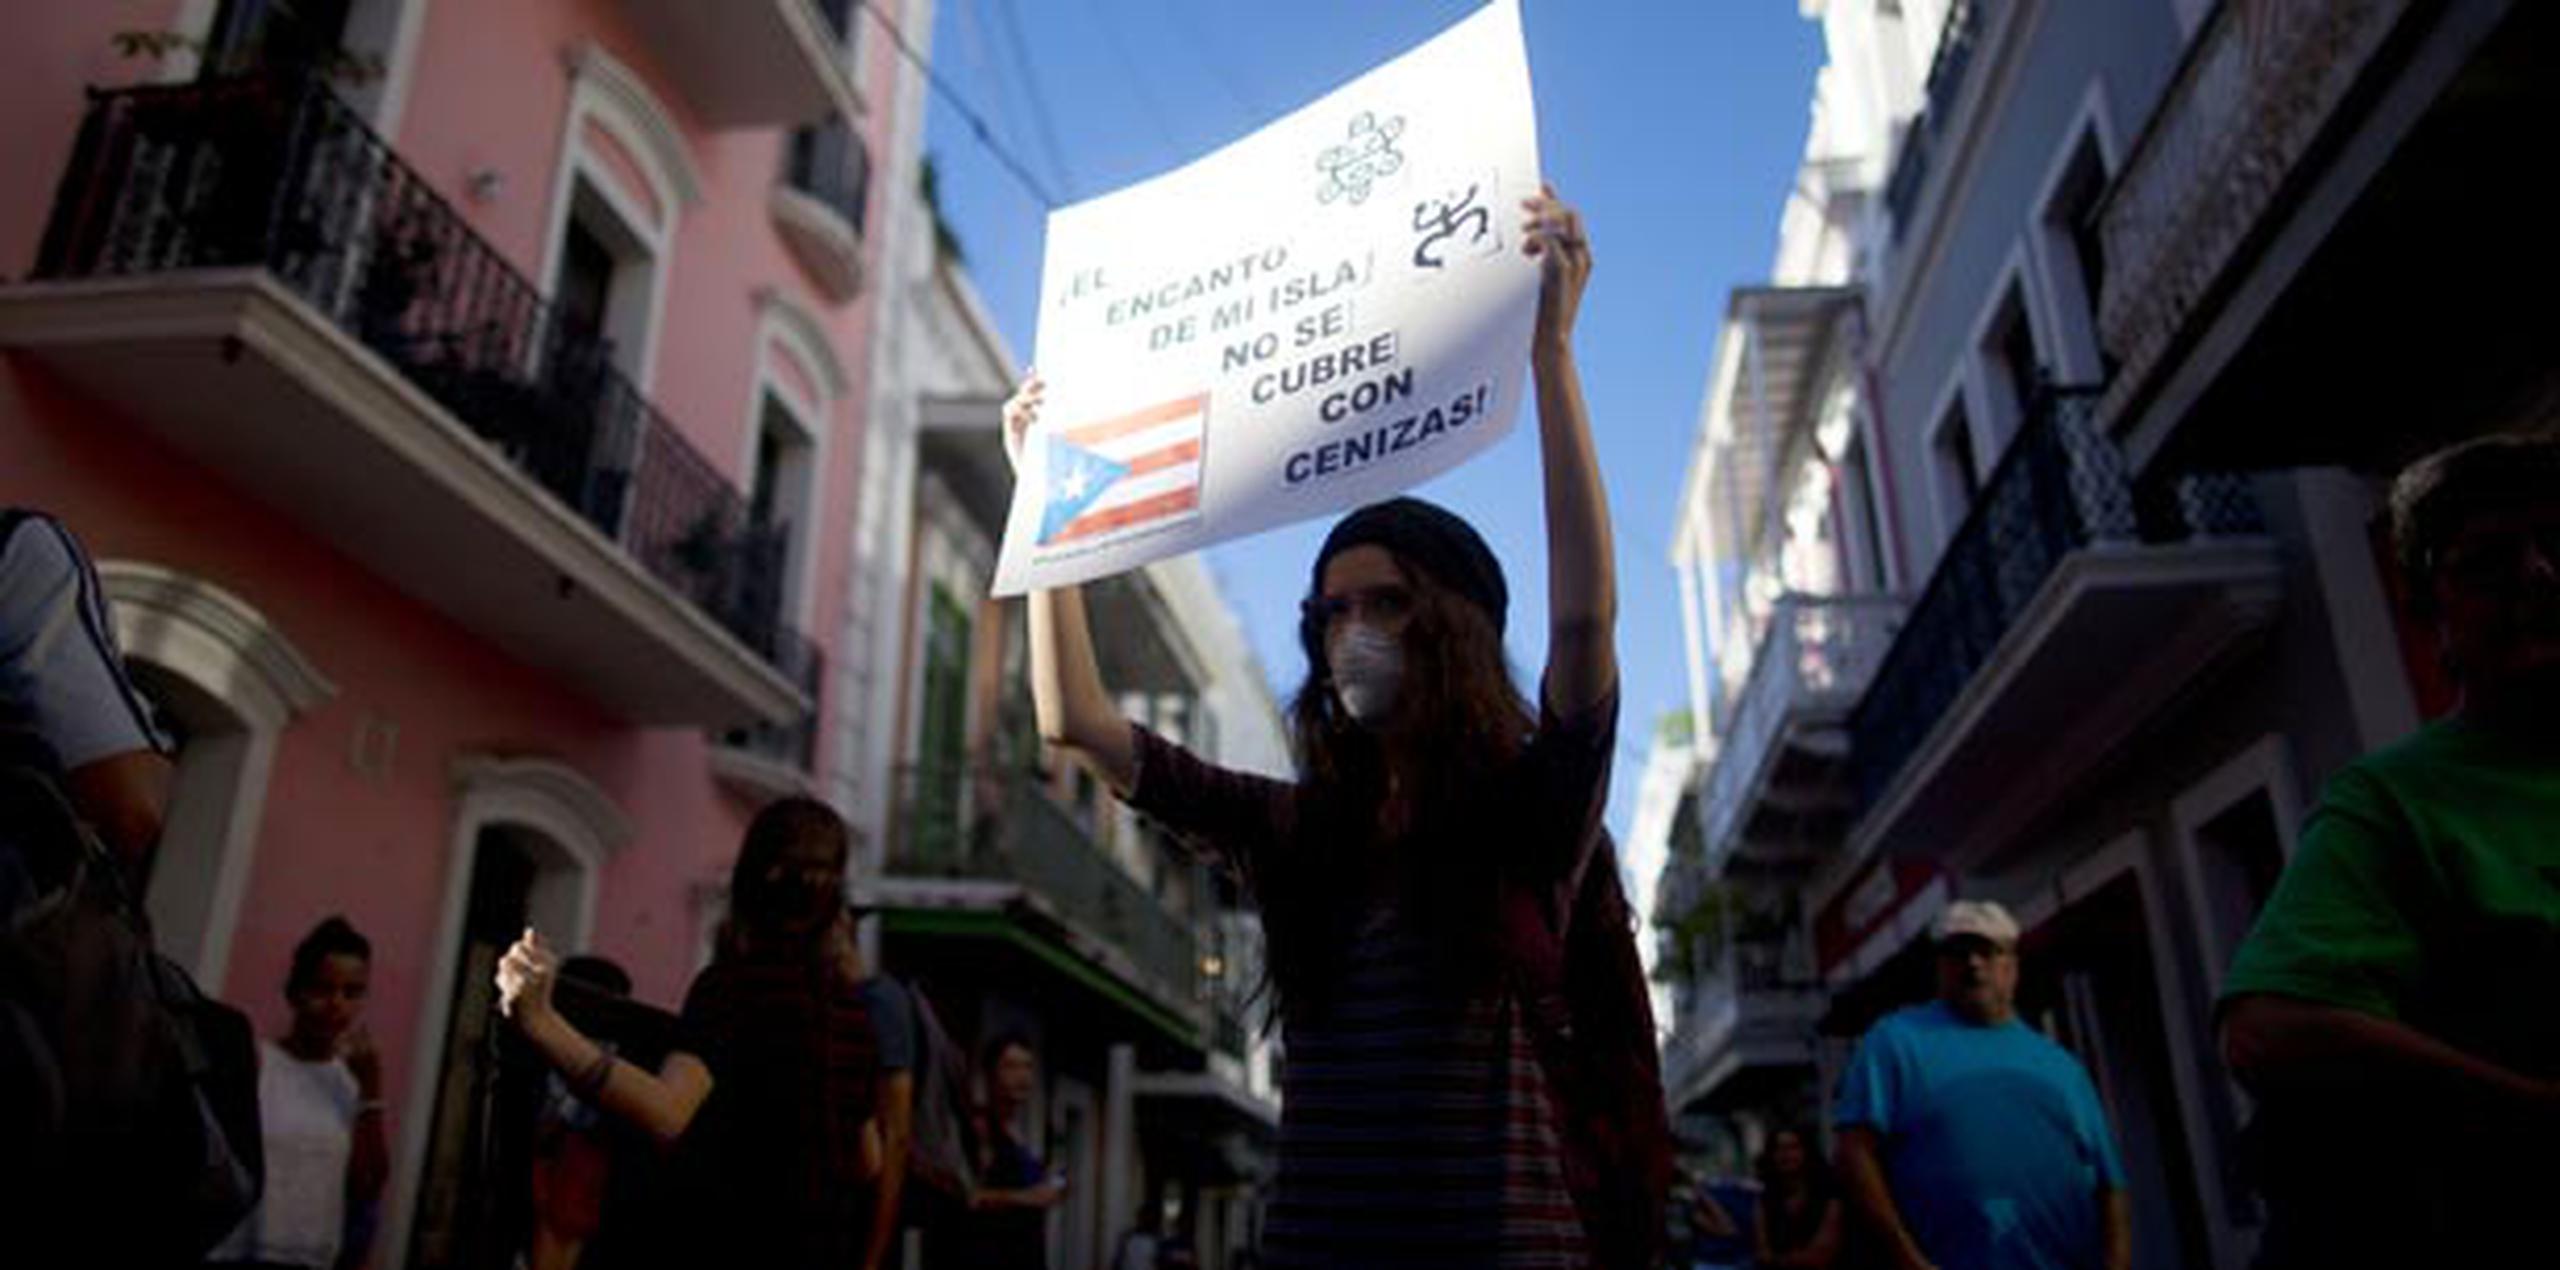 Los manifestantes gritaban consignas a favor del pueblo y en contra de lo que está ocurriendo en el sur de Puerto Rico.  (tonito.zayas@gfrmedia.com)